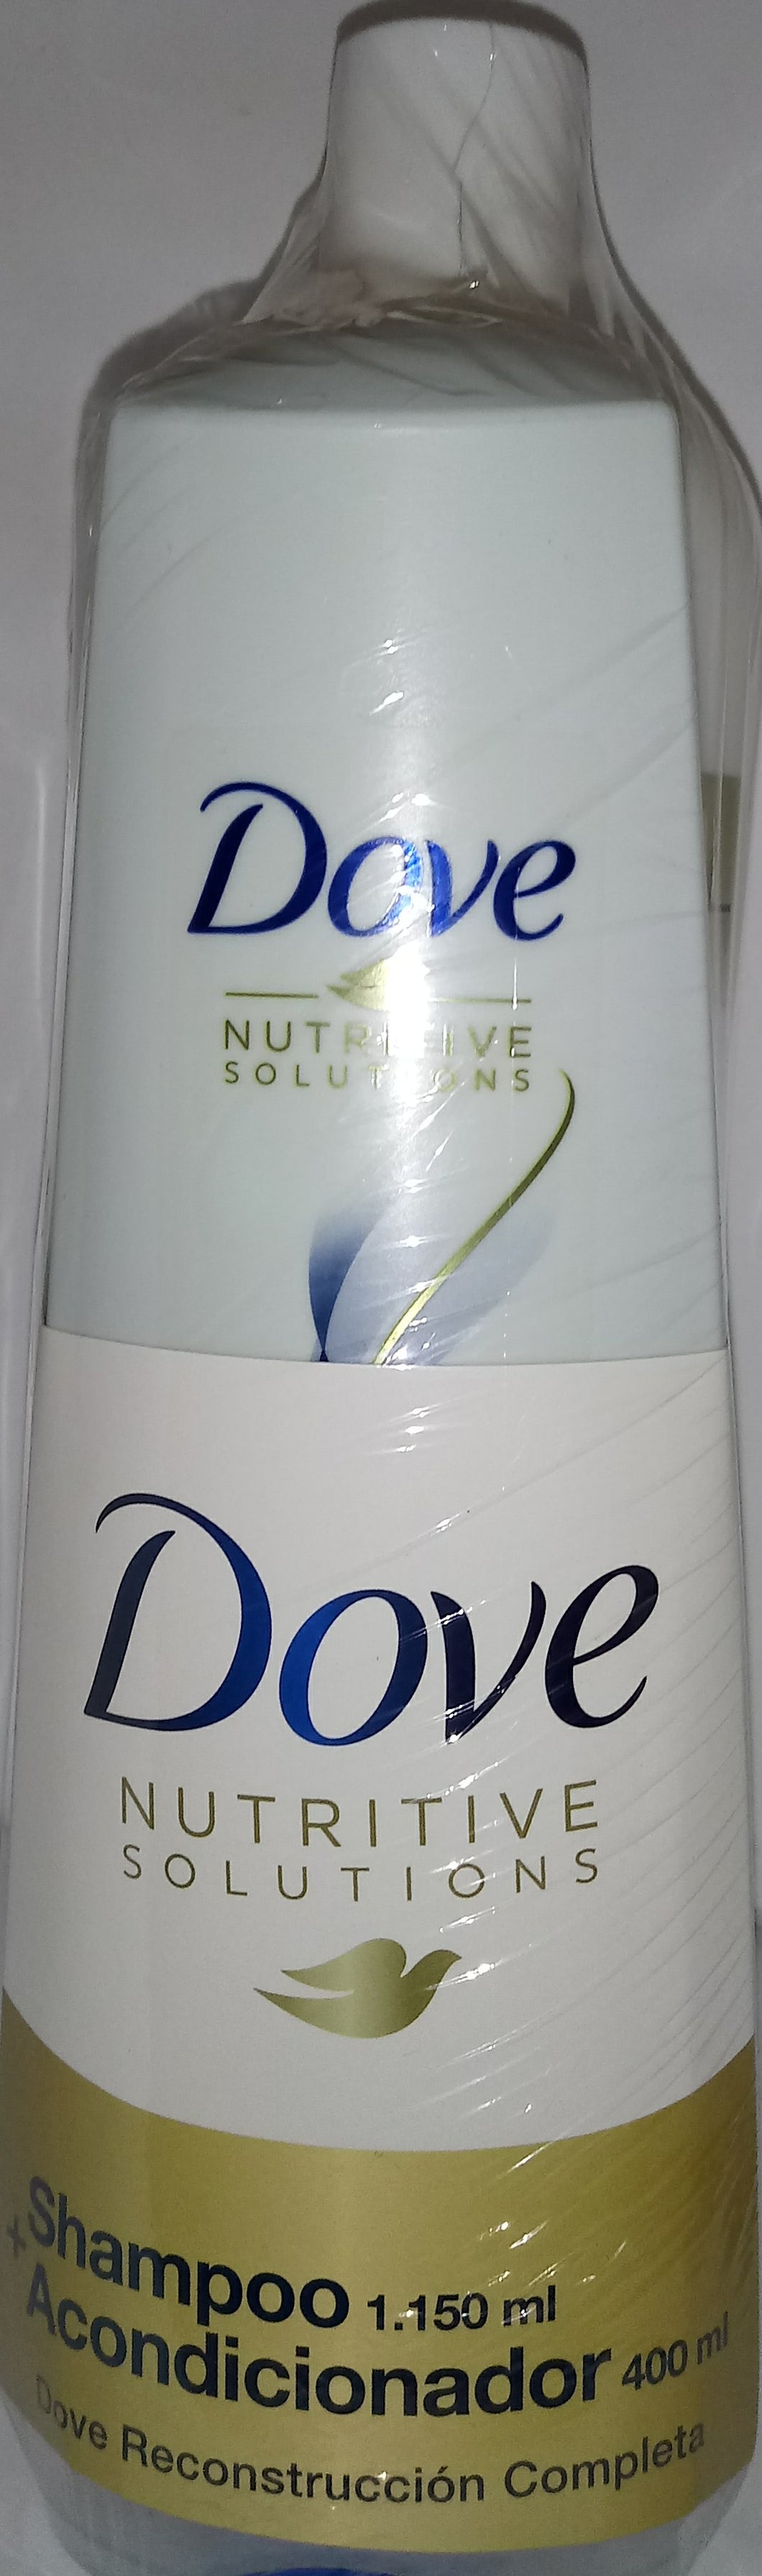 Shampoo y acondicionador Dove